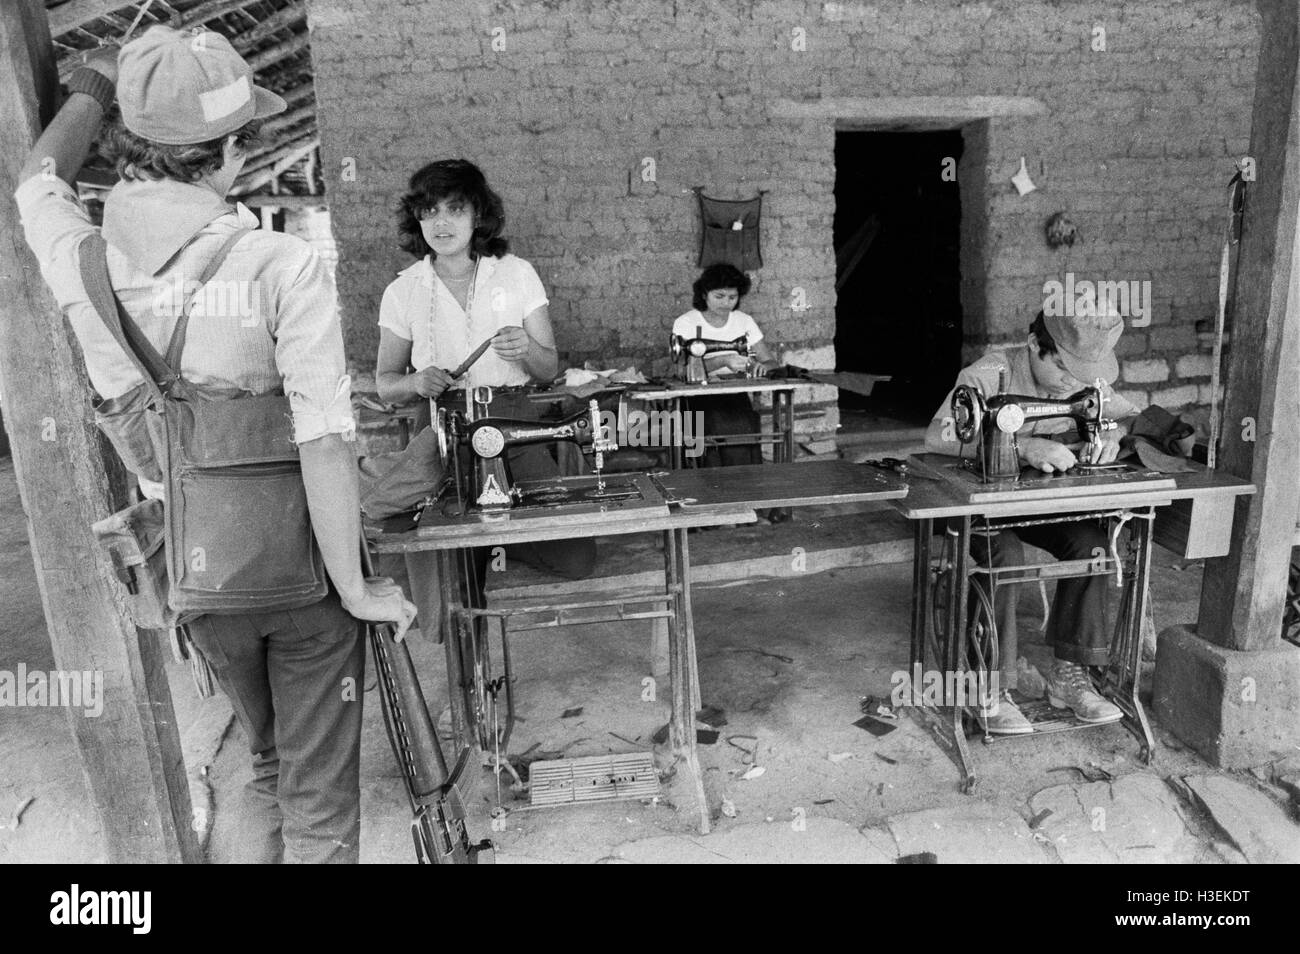 CHALATENANGO, EL SALVADOR, FEB 1984: - all'interno del FPL Guerrilla zone franche soggette al controllo di un laboratorio di rendere uniformi per i guerriglieri. Foto di Mike Goldwater Foto Stock